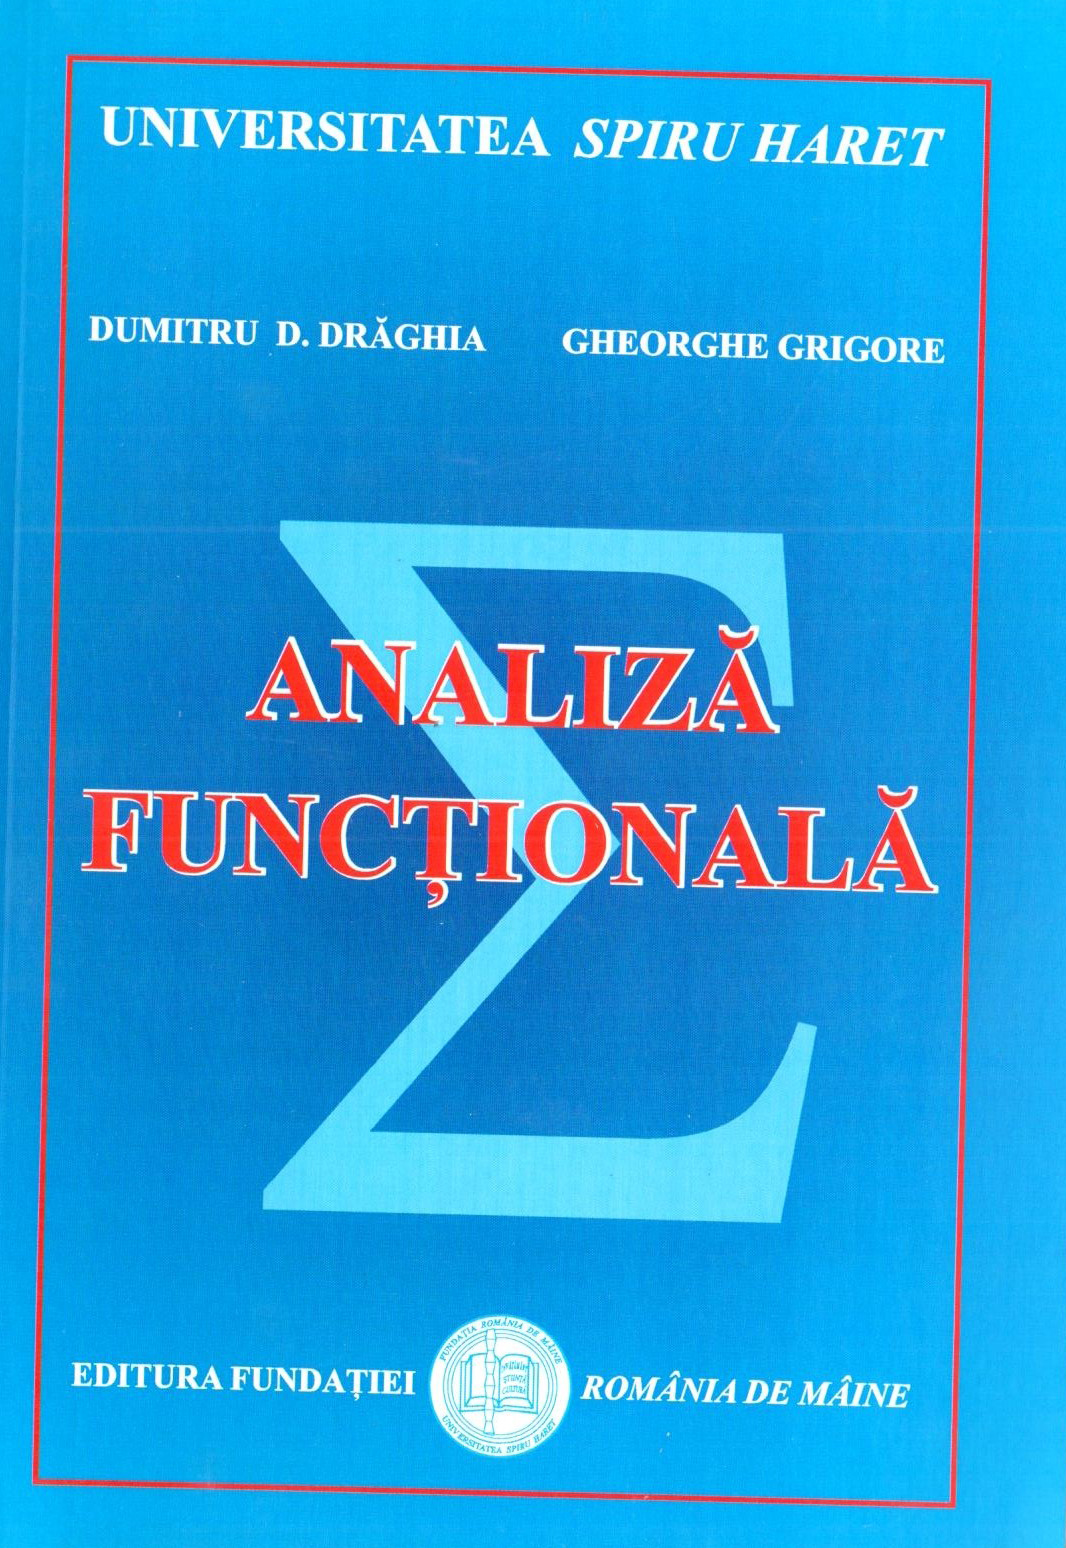 Analiza functionala | Dumitru D. Draghia, Gheorghe Grigore